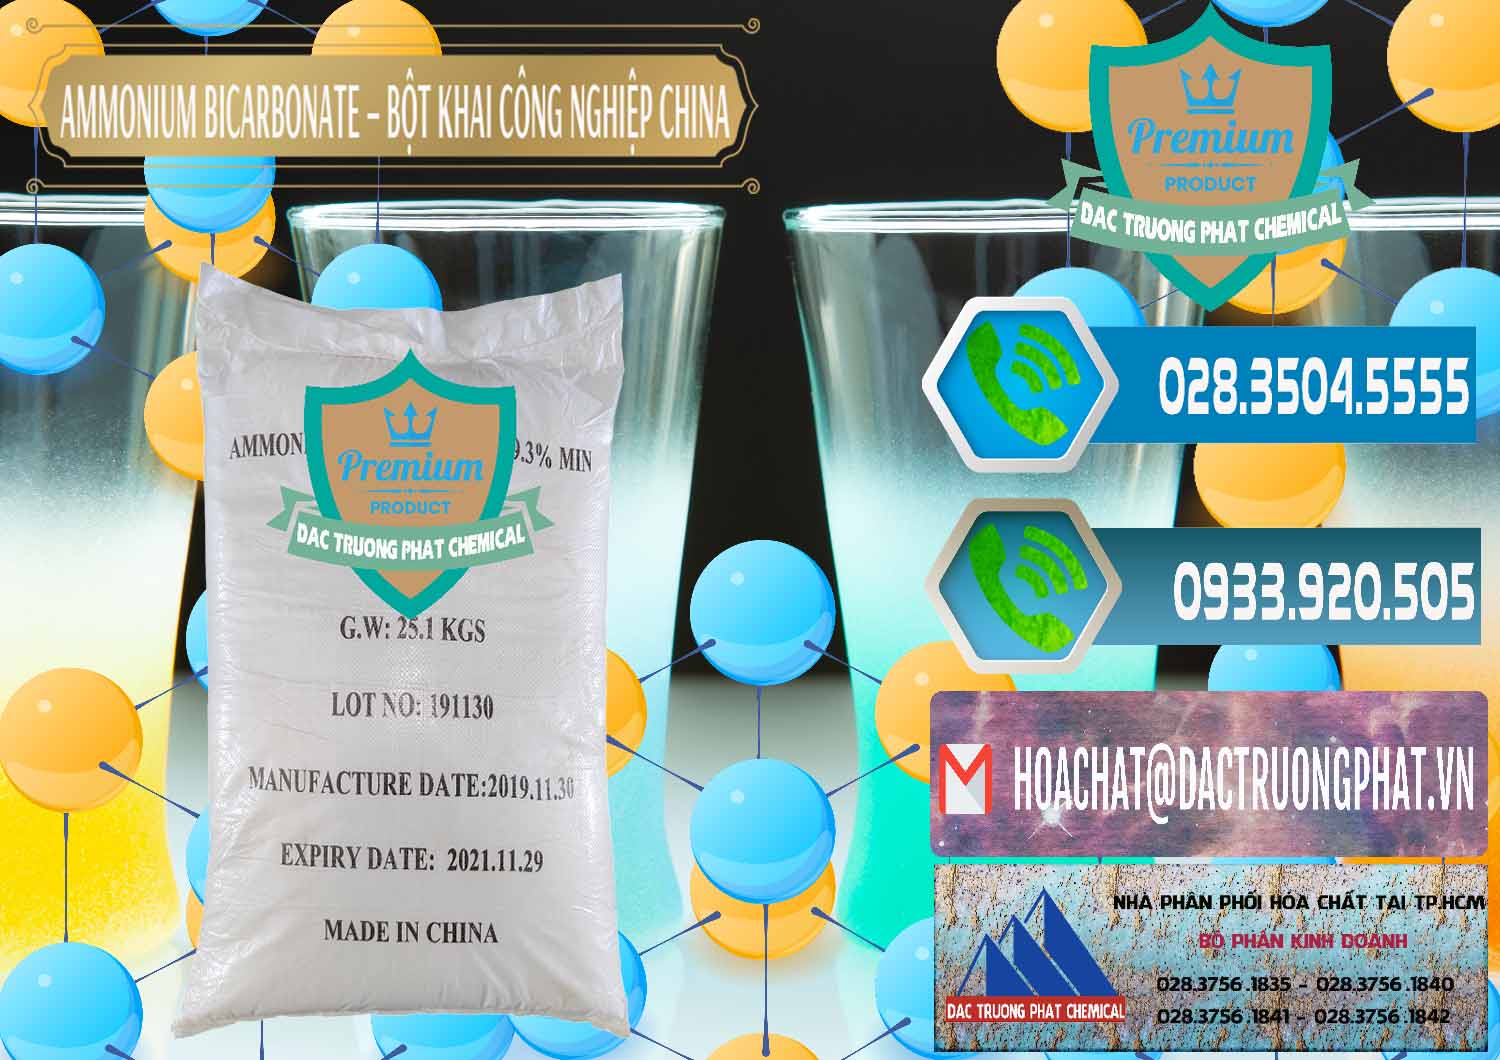 Đơn vị bán và cung cấp Ammonium Bicarbonate – Bột Khai Công Nghiệp Trung Quốc China - 0020 - Công ty cung cấp và bán hóa chất tại TP.HCM - congtyhoachat.net